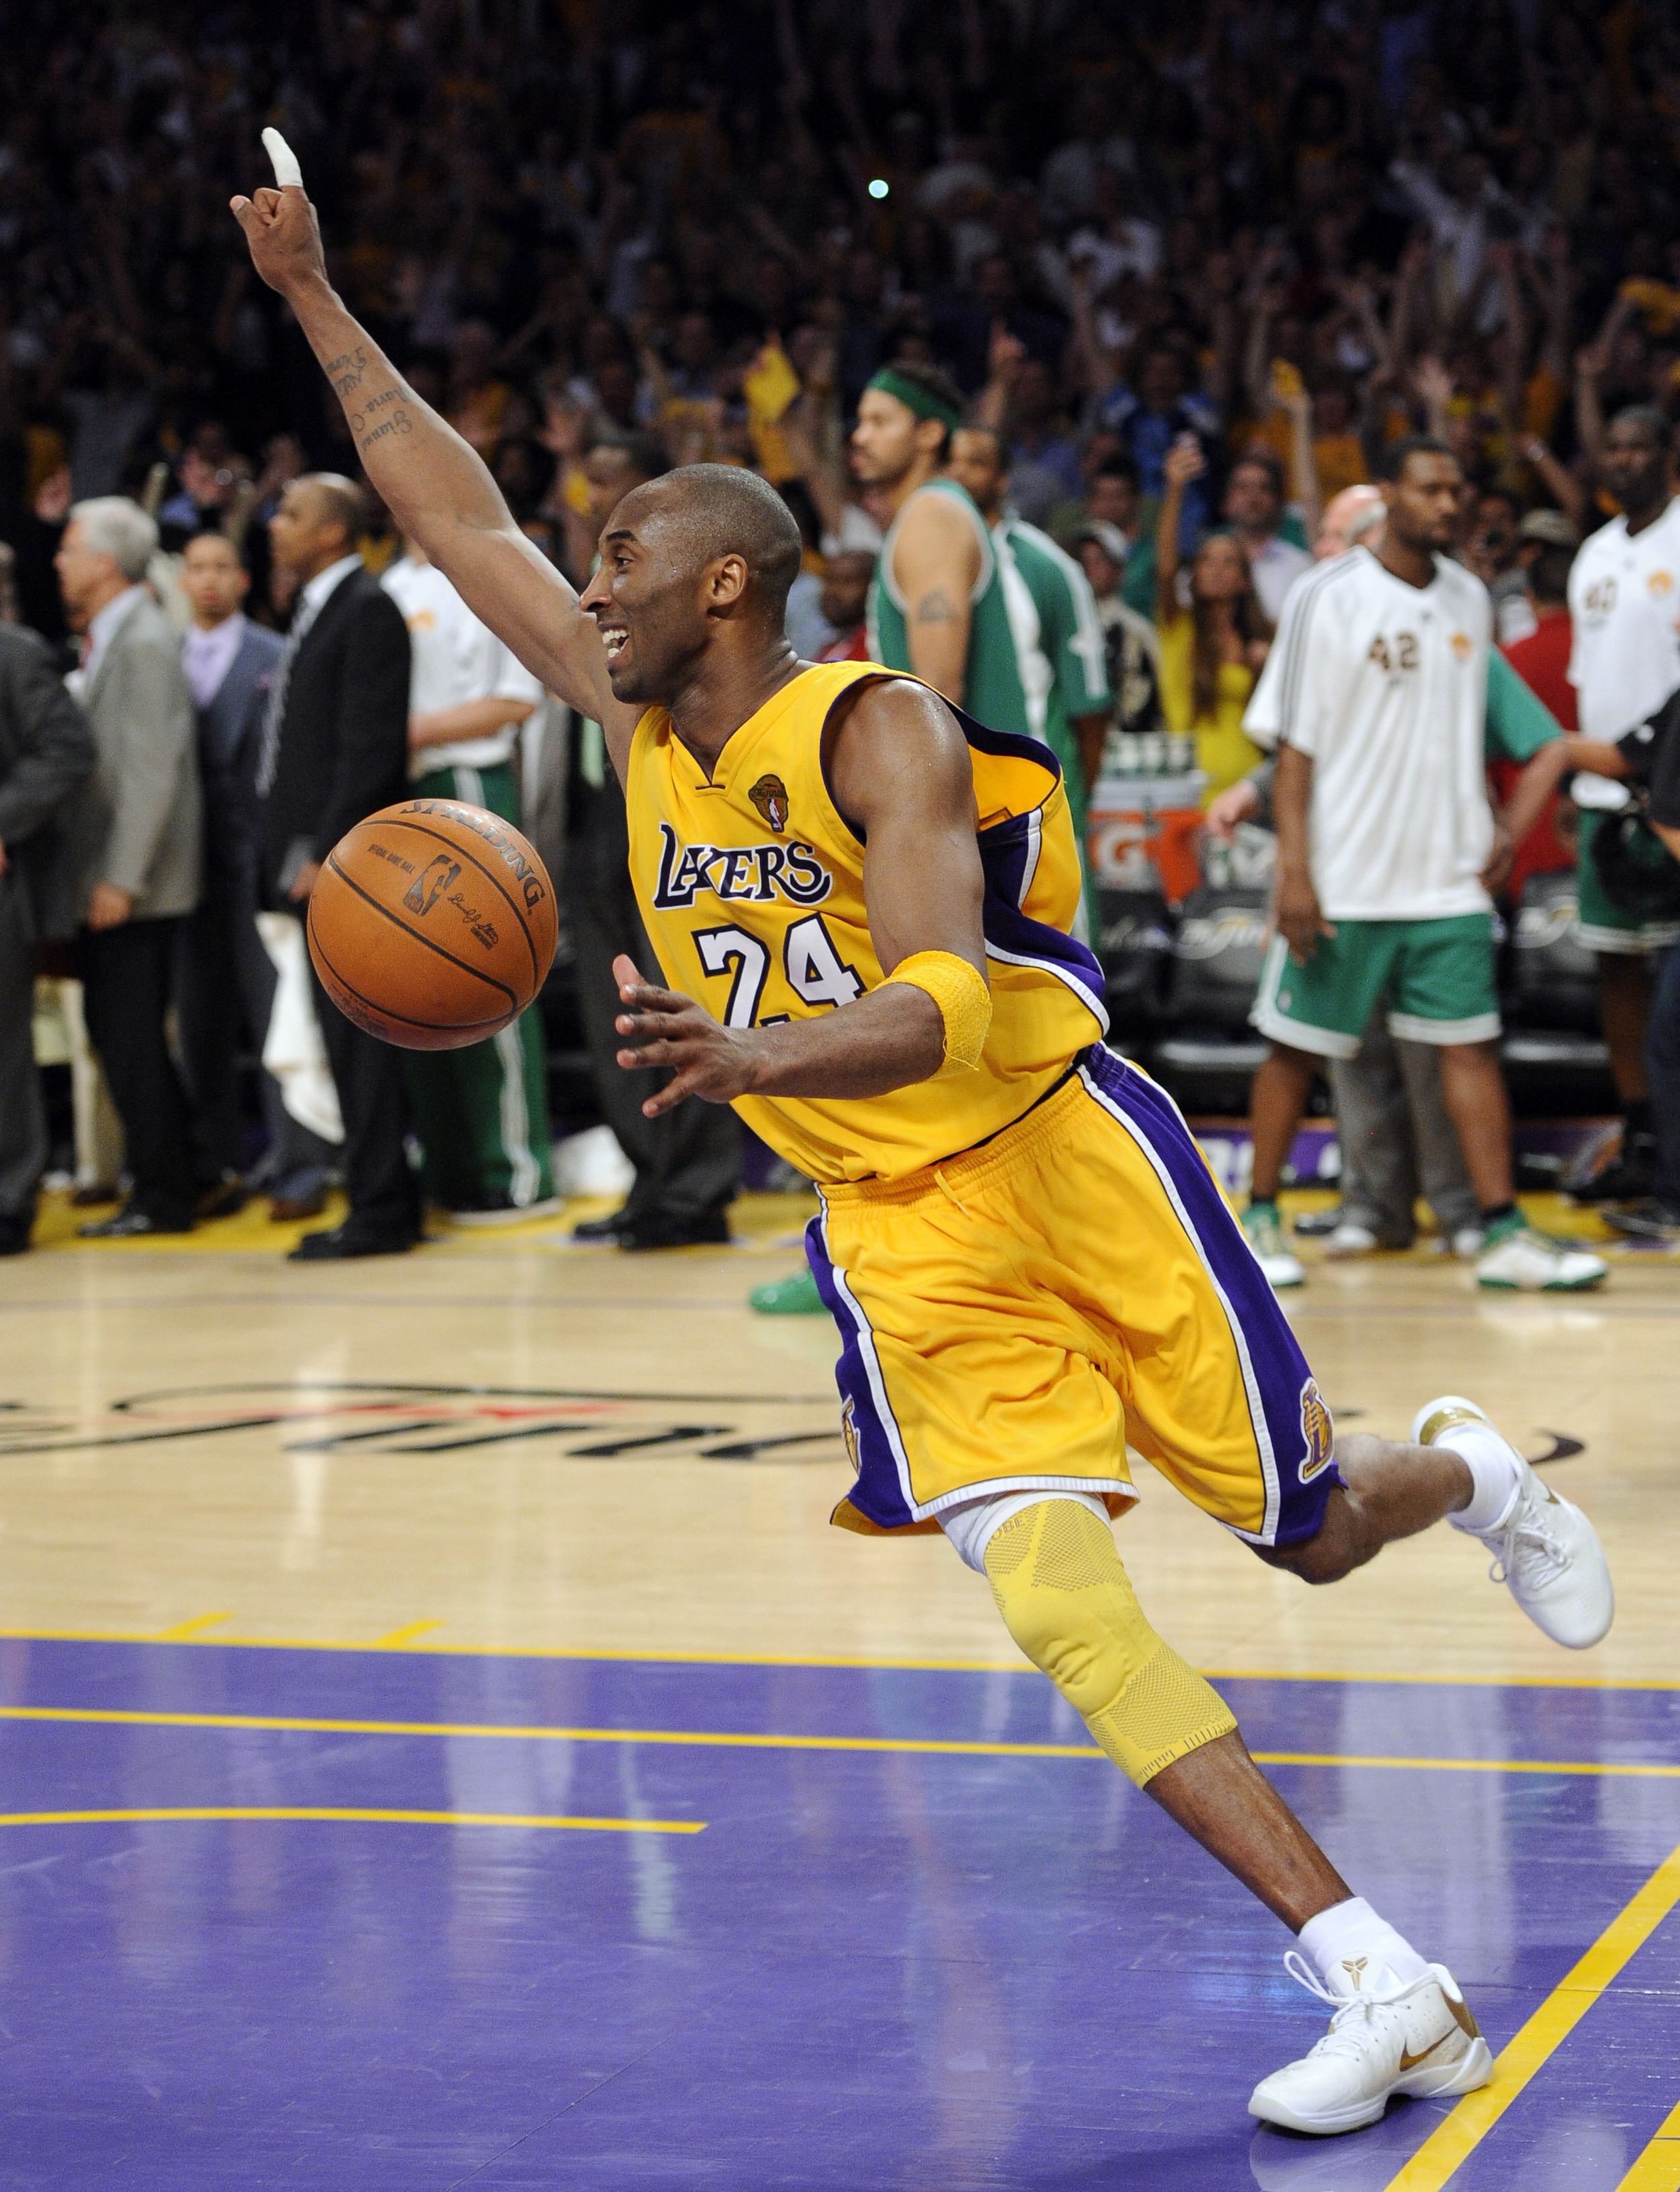 Lakers win NBA crown - June 17, 2010